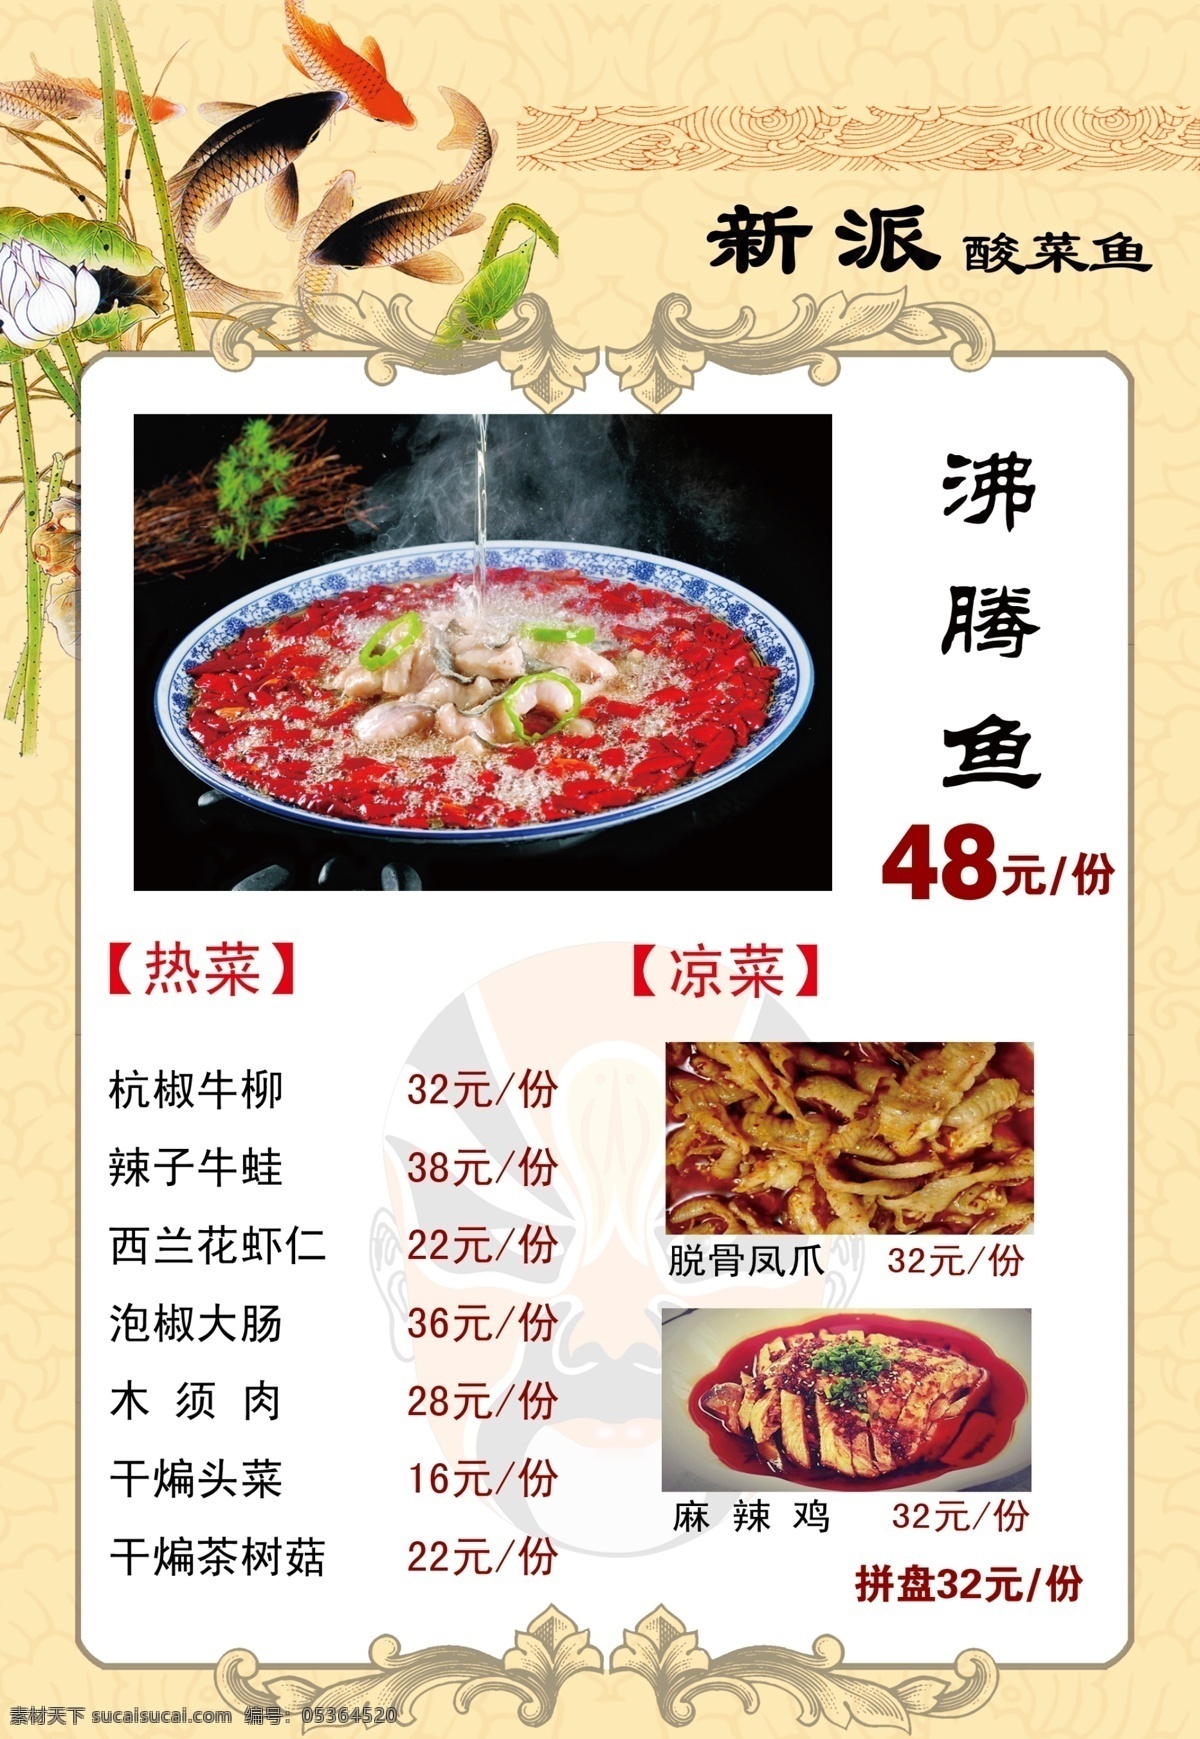 川菜菜单 川菜 菜单 价目表 沸腾鱼 饭店 菜单菜谱